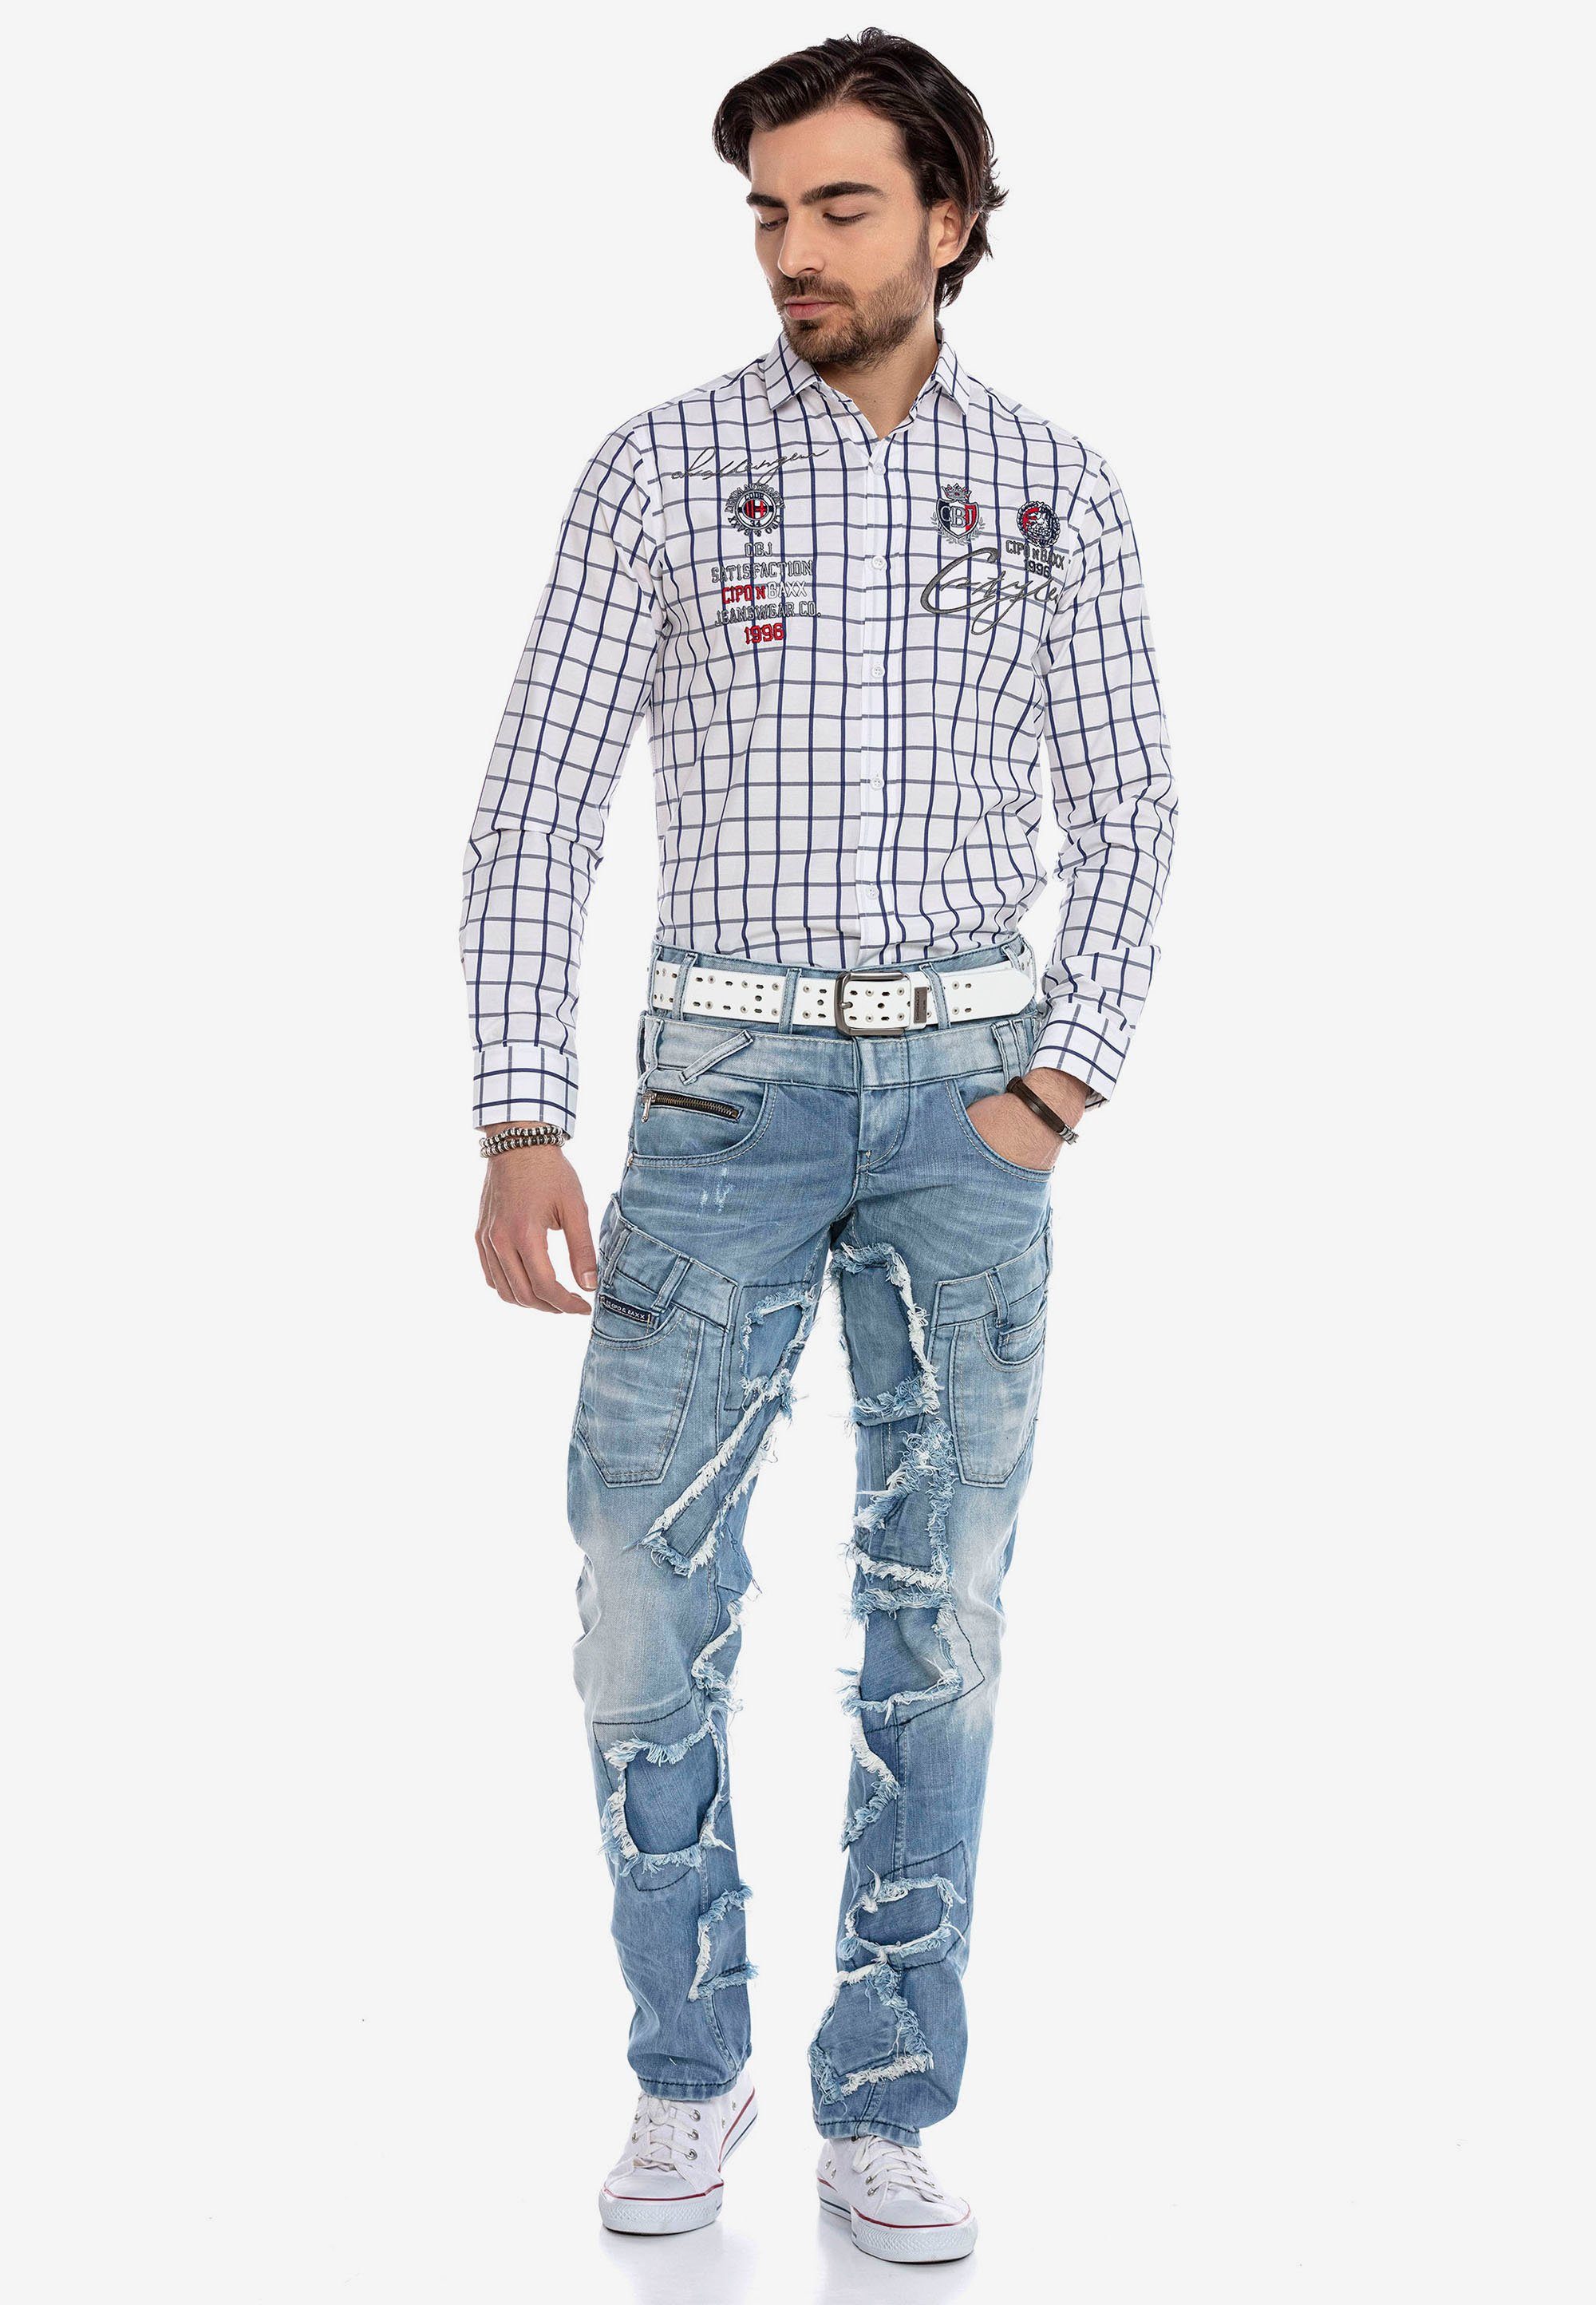 im Patchwork-Design Baxx & trendigen Cipo Jeans Bequeme